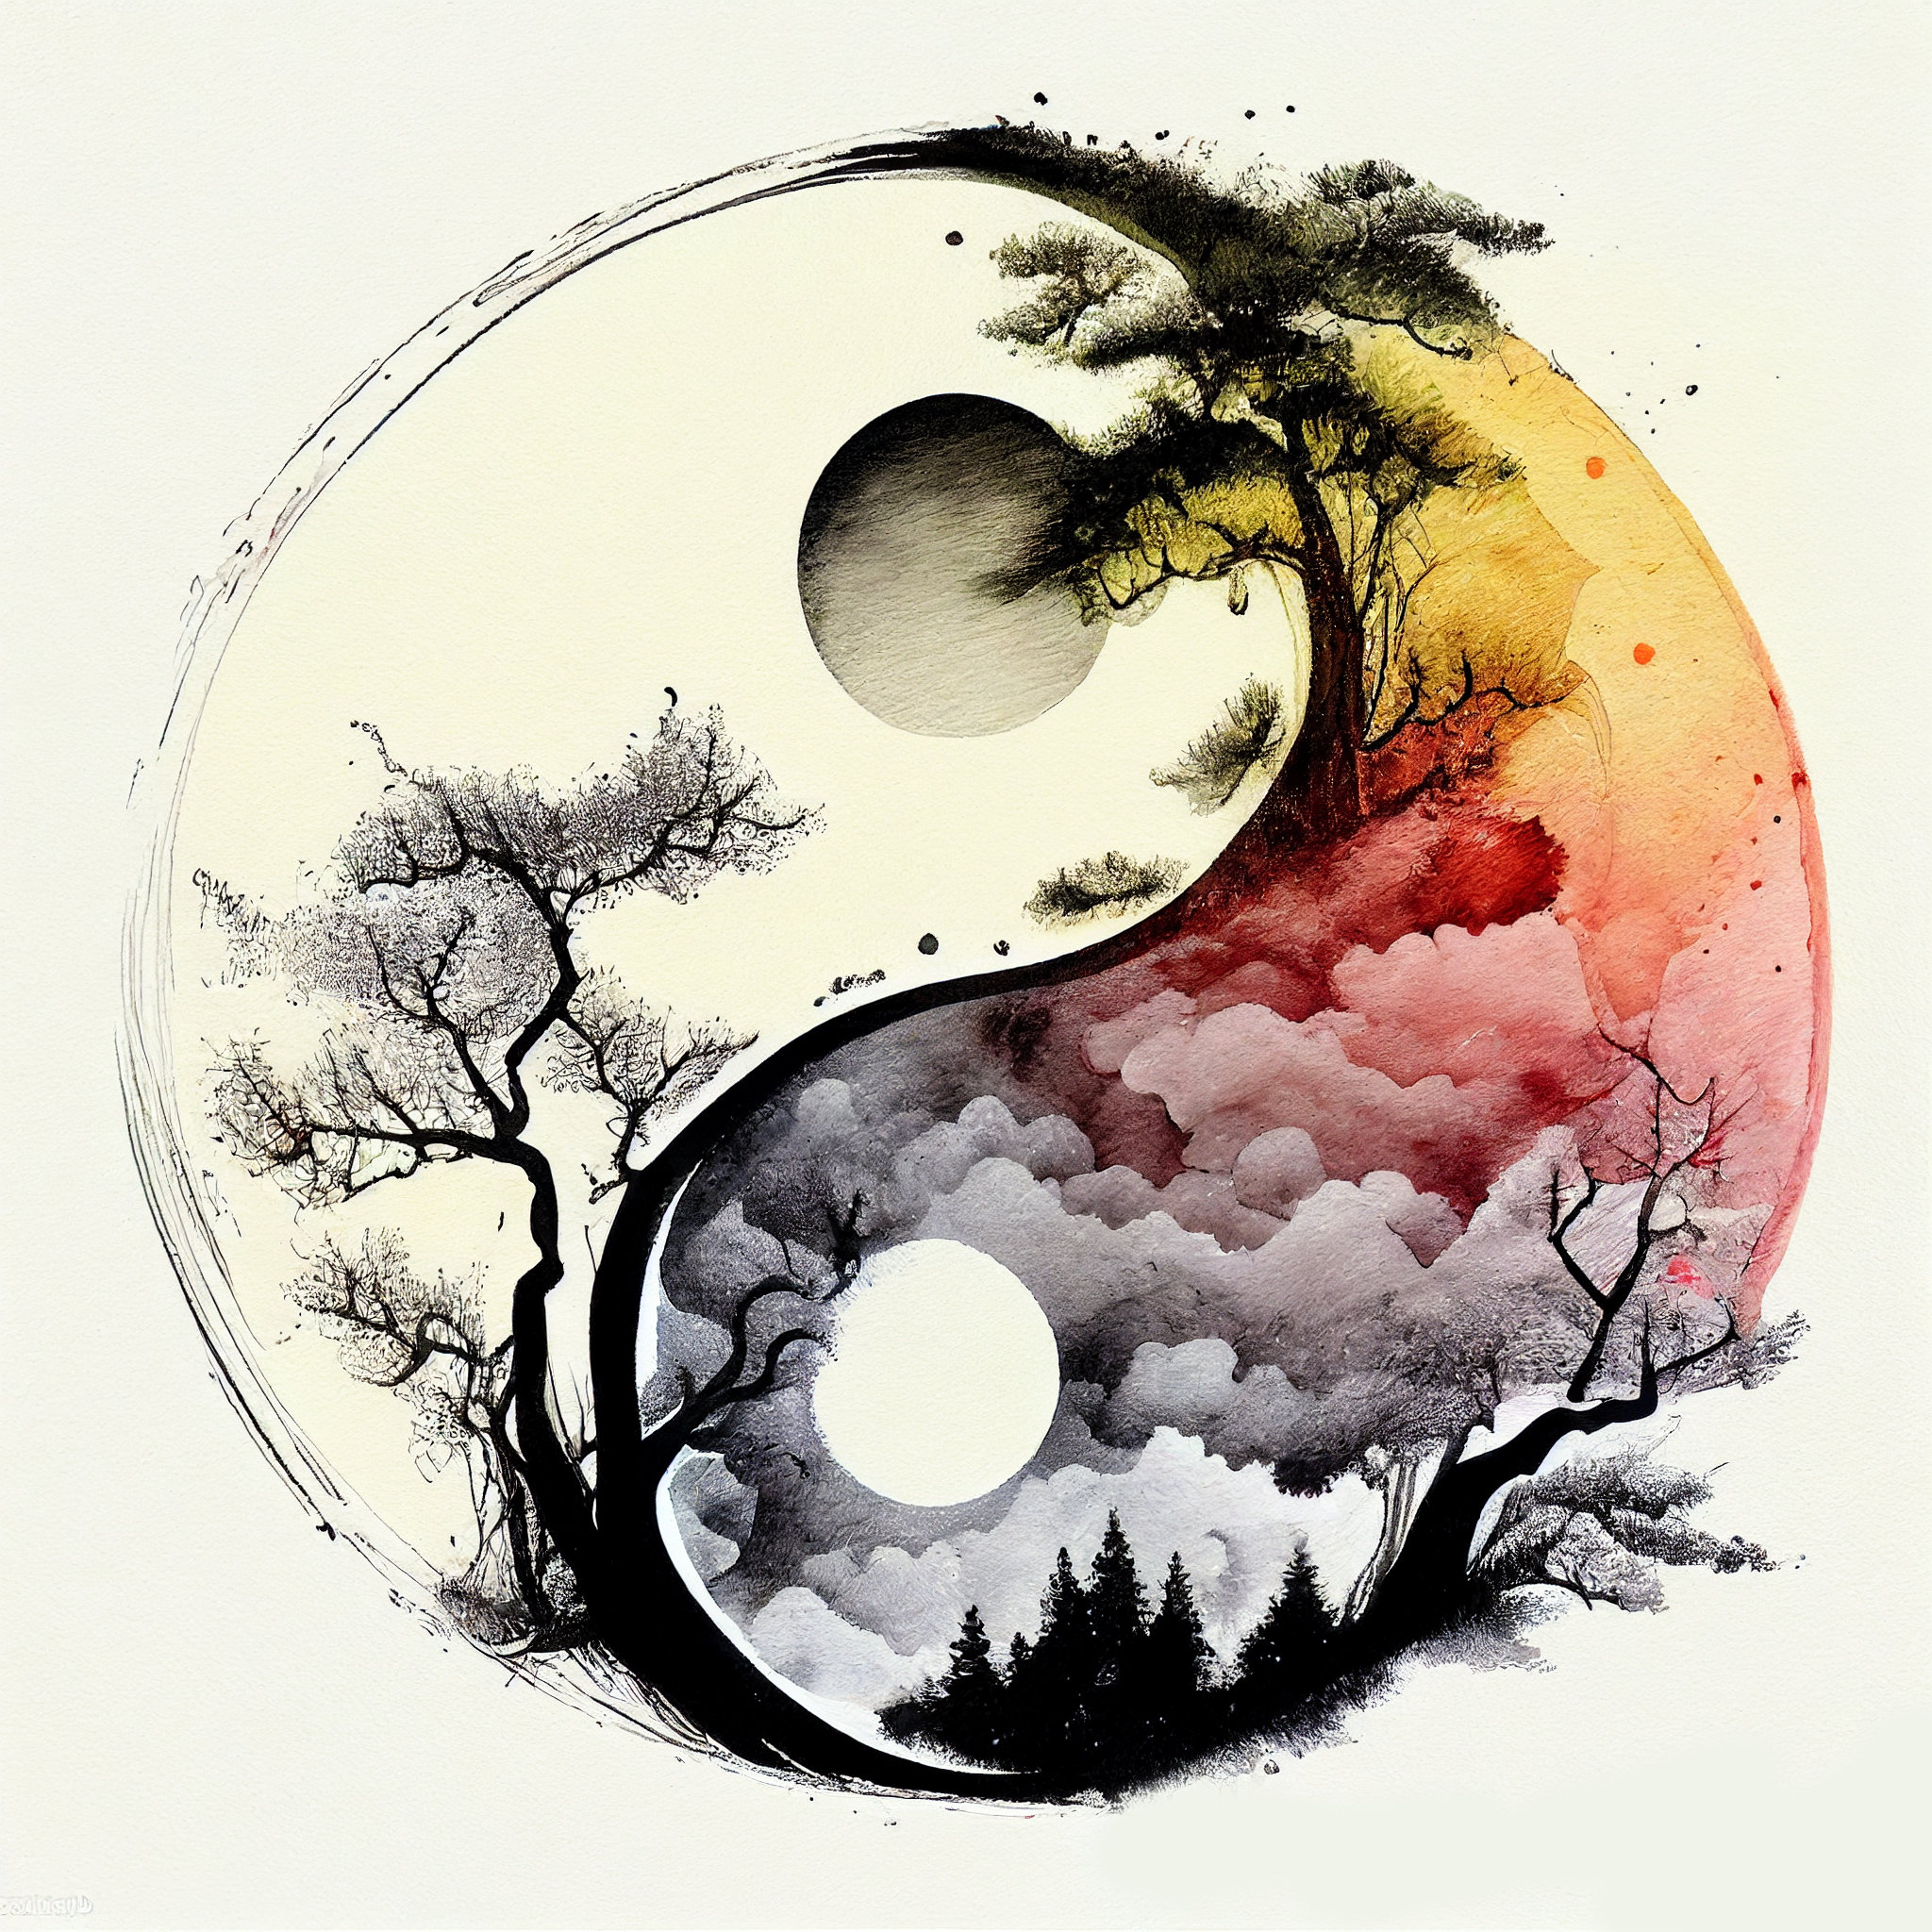 Buy Yin Yang Printable, Ying Yang Watercolor Artwork, Meditation Wall Art,  Zen Print Online in India 